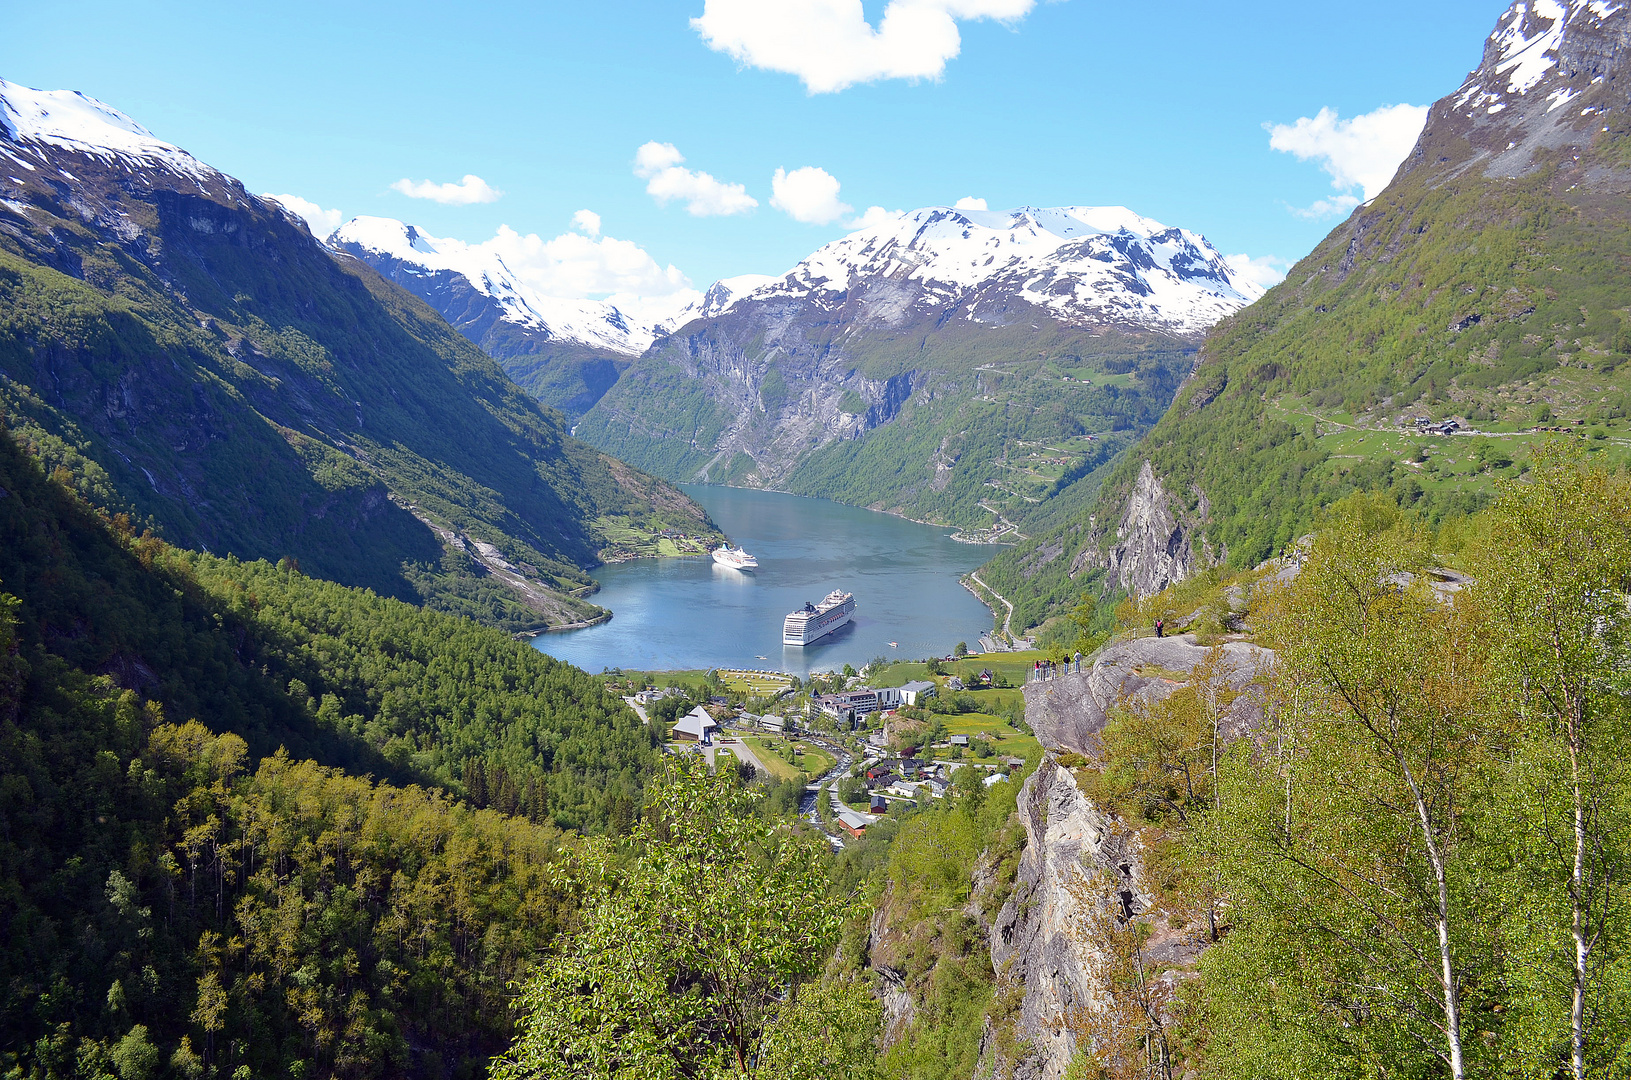 Fjord Norwegen